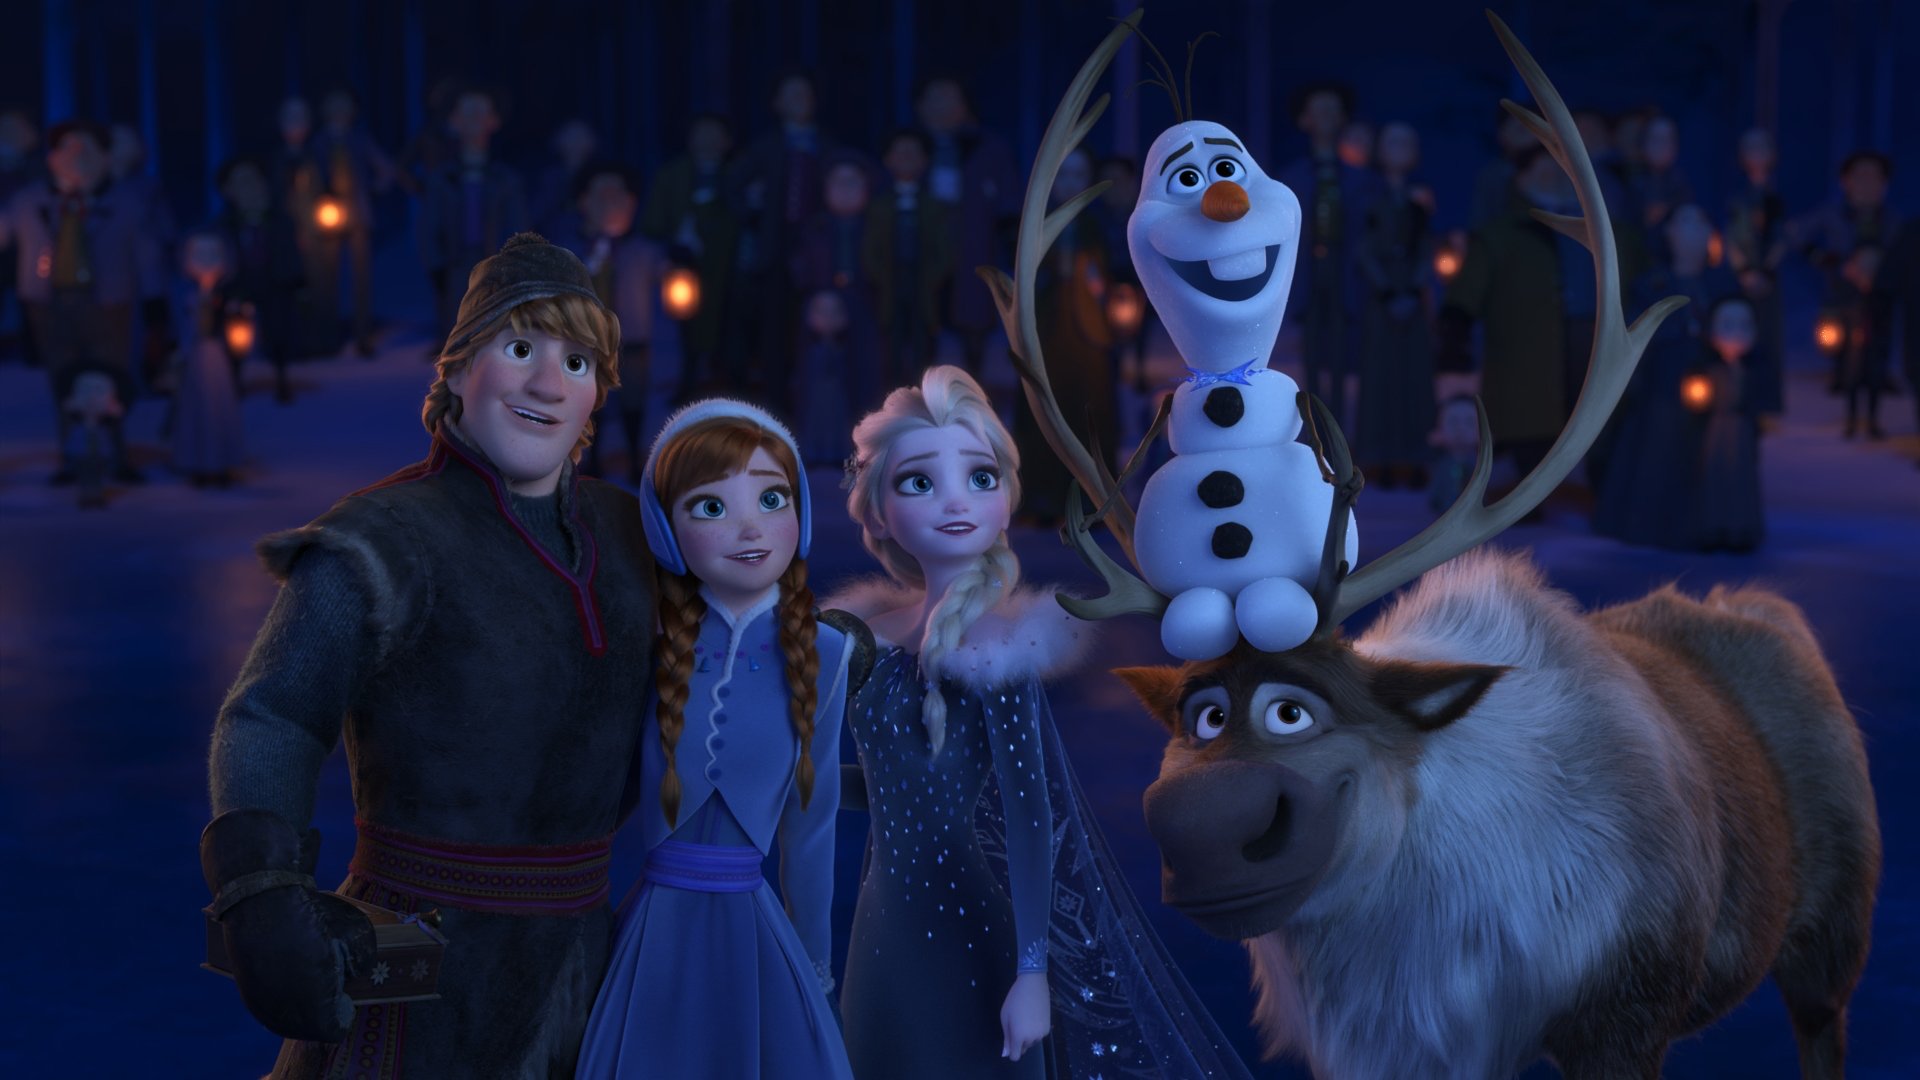 ოლაფის გაყინული თავგადასავალი / Olaf's Frozen Adventure (OLafis Gayinuli Tavgadasavali Qartulad) ქართულად